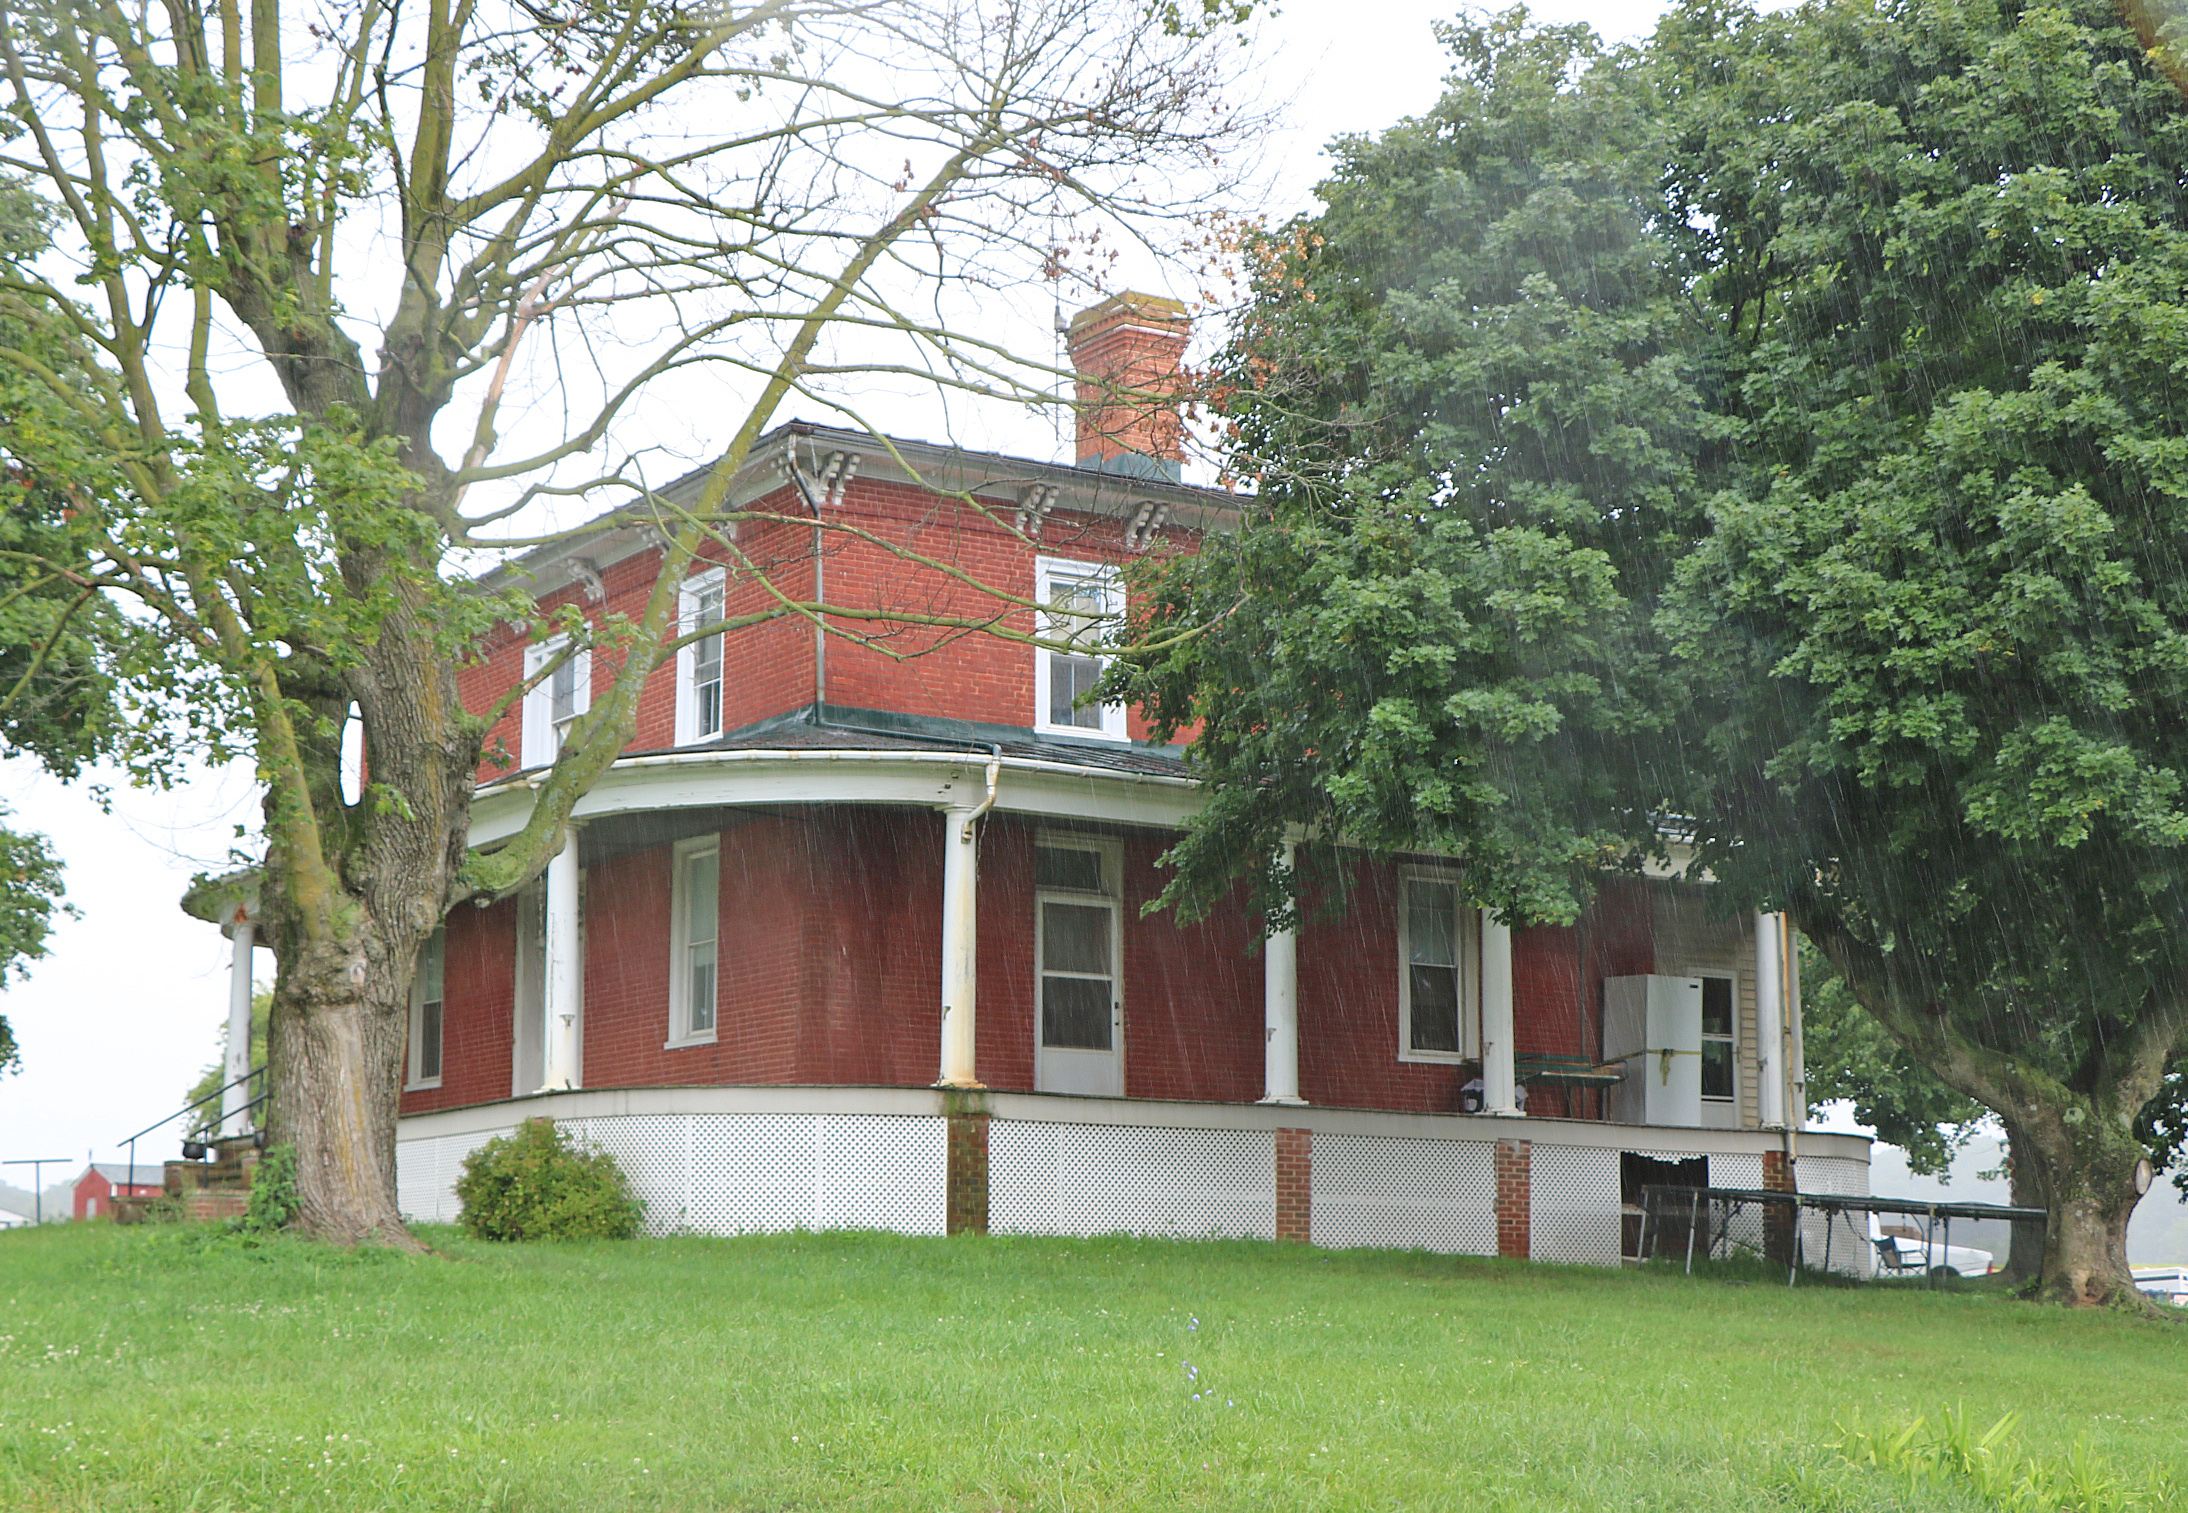 A.J. Miller House